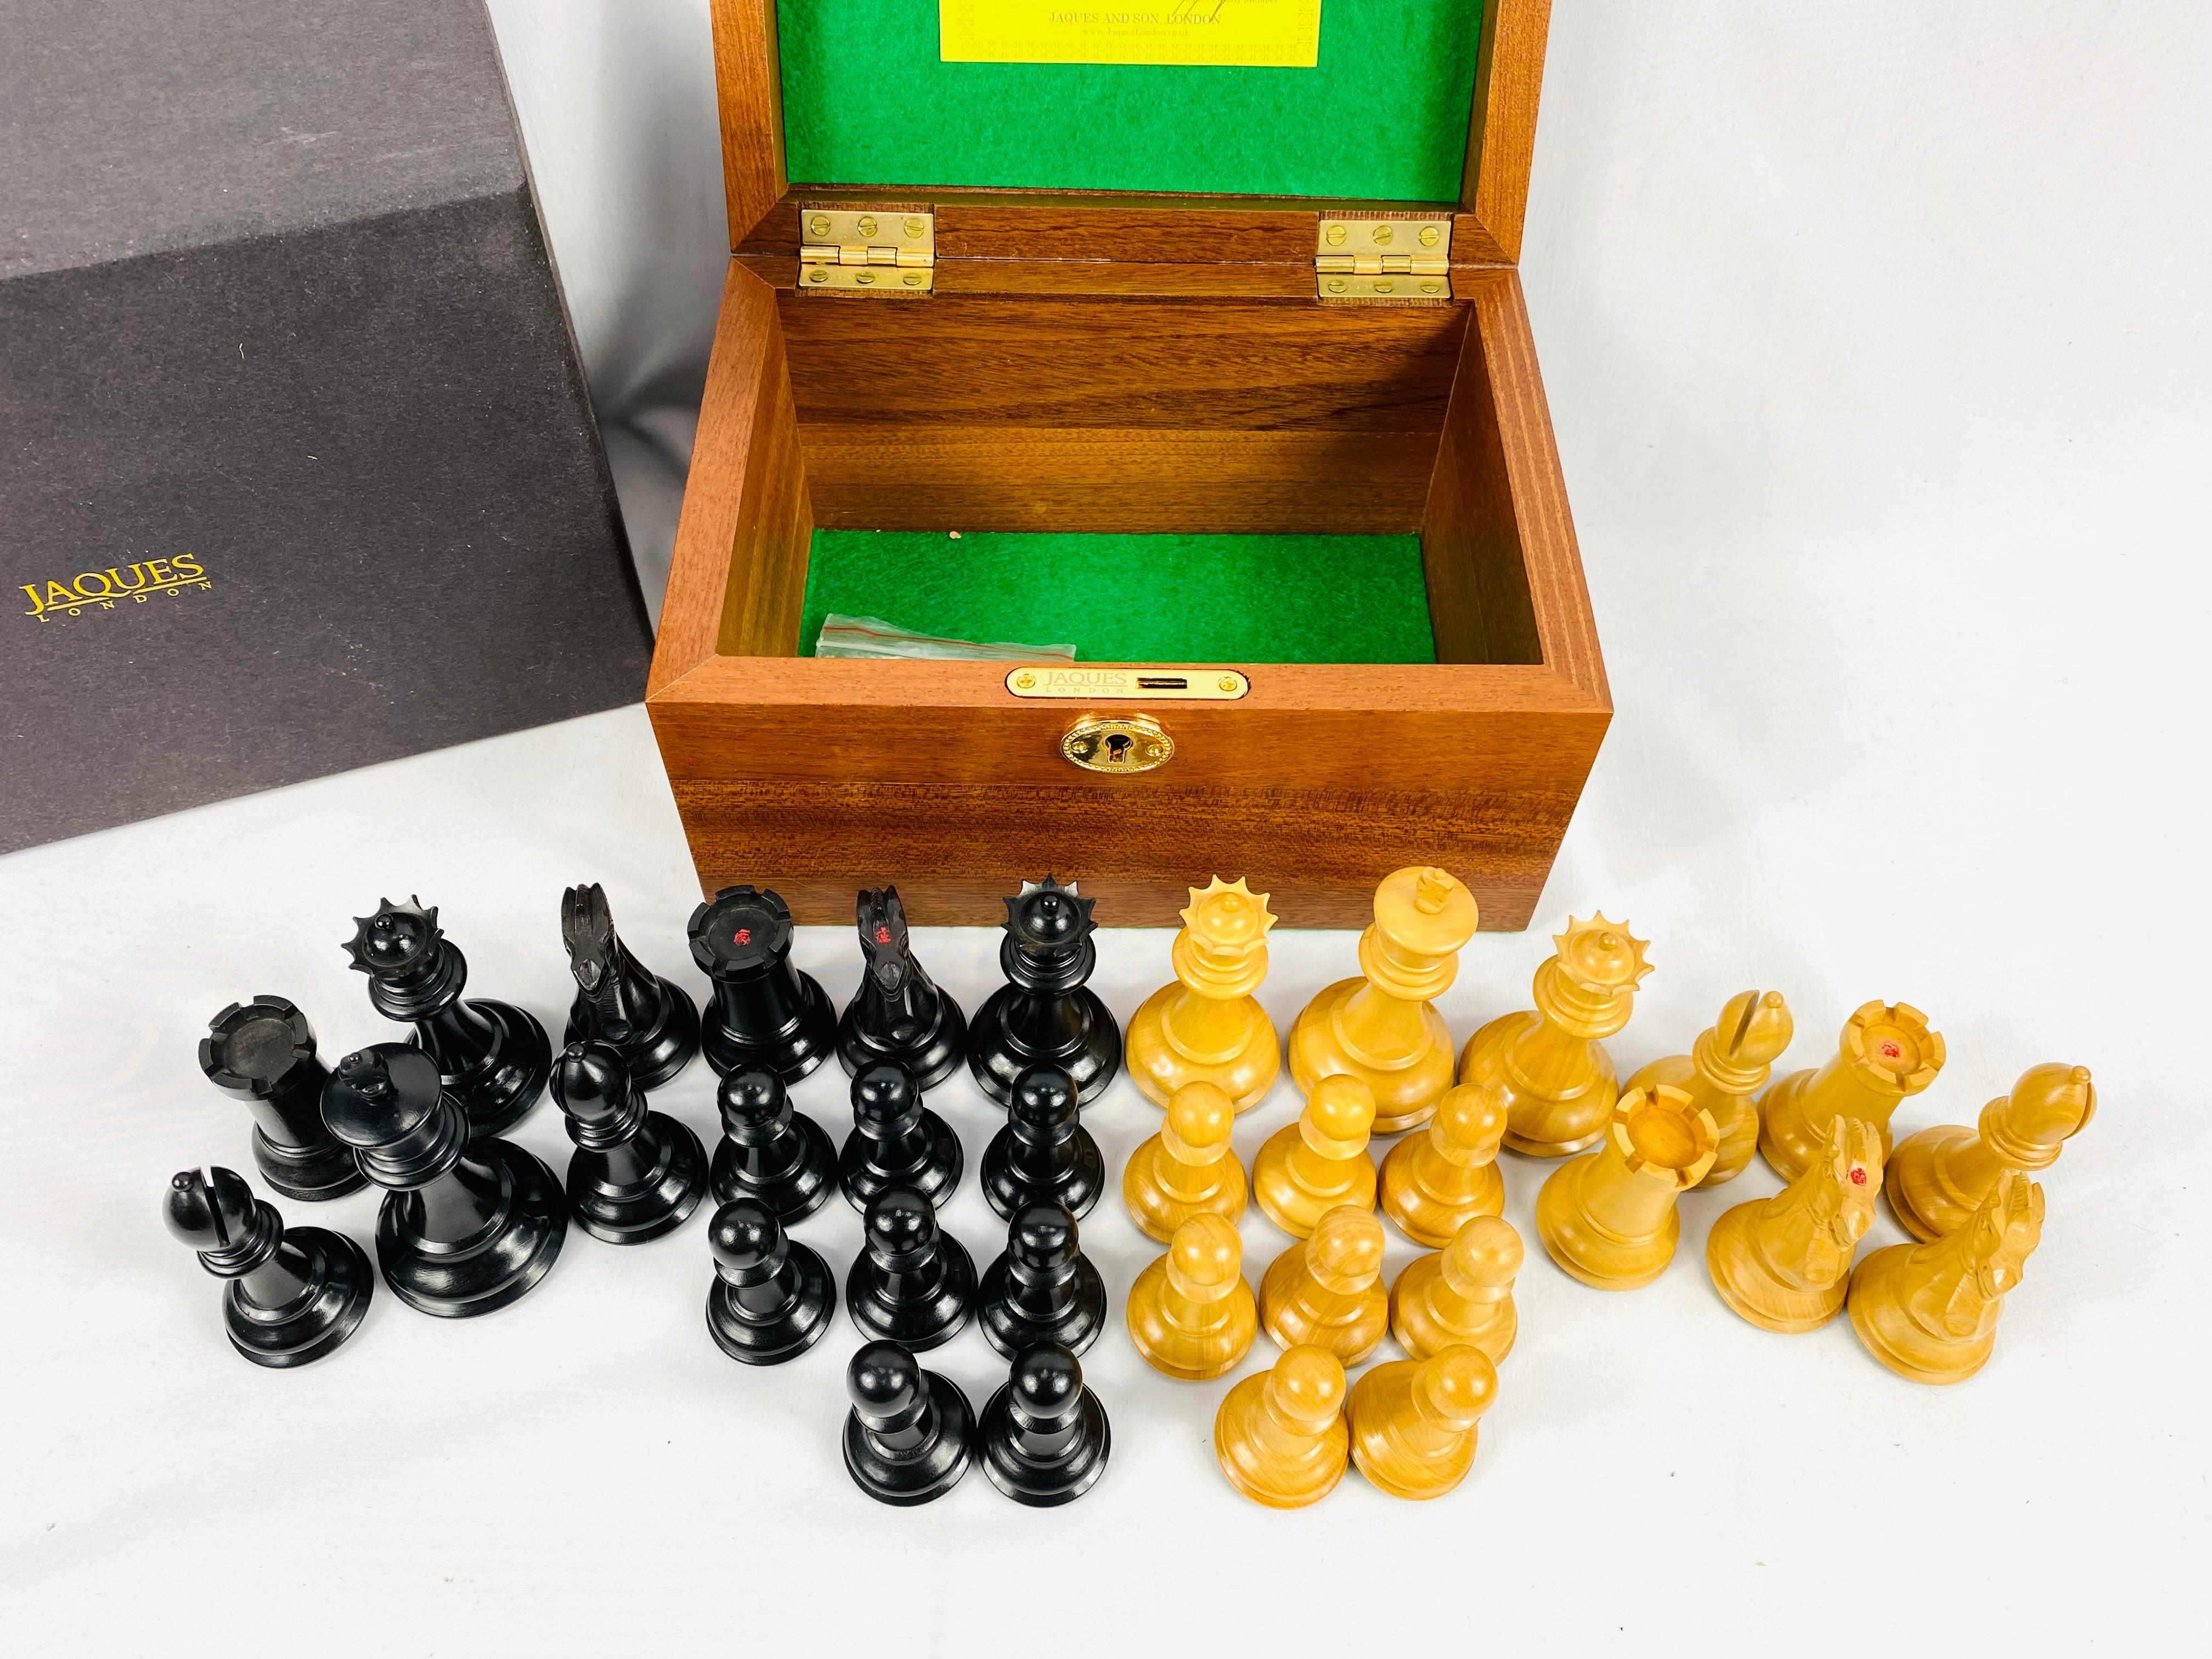 Jaques of London. Jeu d'échecs original Staunton en édition limitée, no. 035184 (rois 9cm), dans sa boîte d'origine avec clé.
Les pièces d'échecs de Staunton sont les plus courantes et les plus familières aujourd'hui. Les pièces portent le nom du